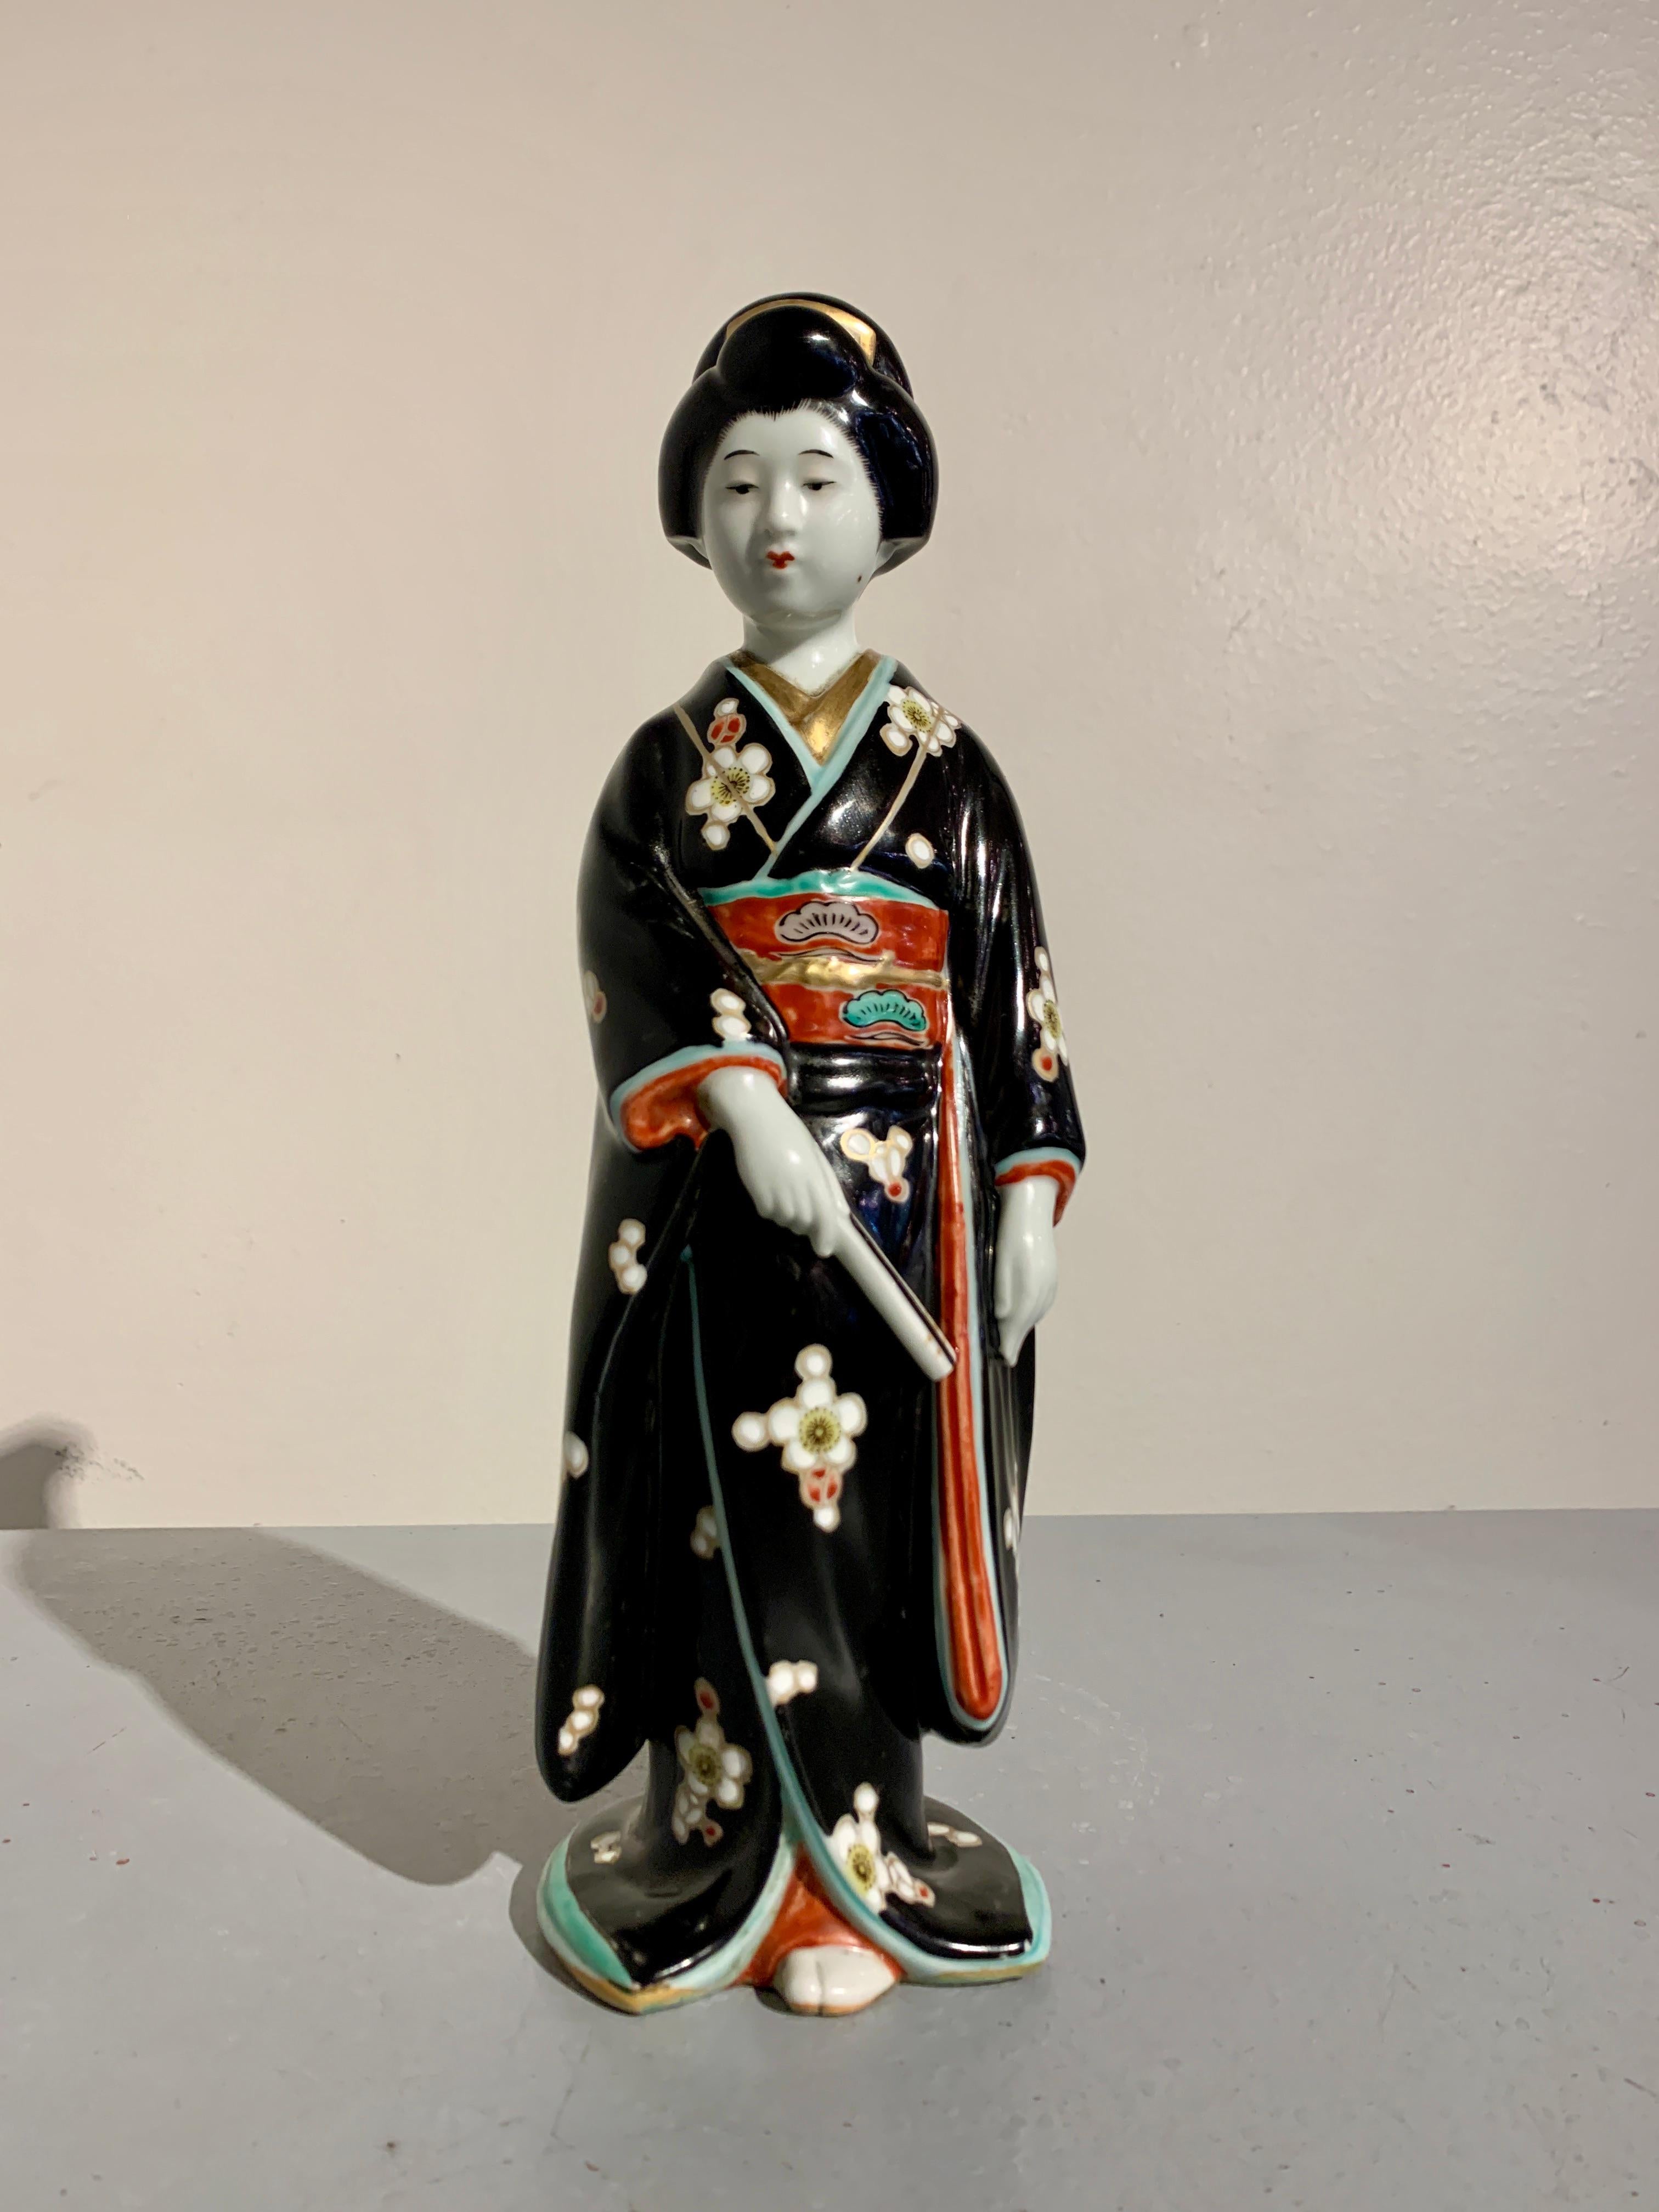 Charmante et délicieuse figurine en porcelaine émaillée Kutani représentant un bijin ou une geisha, début de l'ère Showa, vers 1930, Japon.

L'élégante figure d'une belle femme, appelée bijin, représentée vêtue d'un kimono complet et tenant un